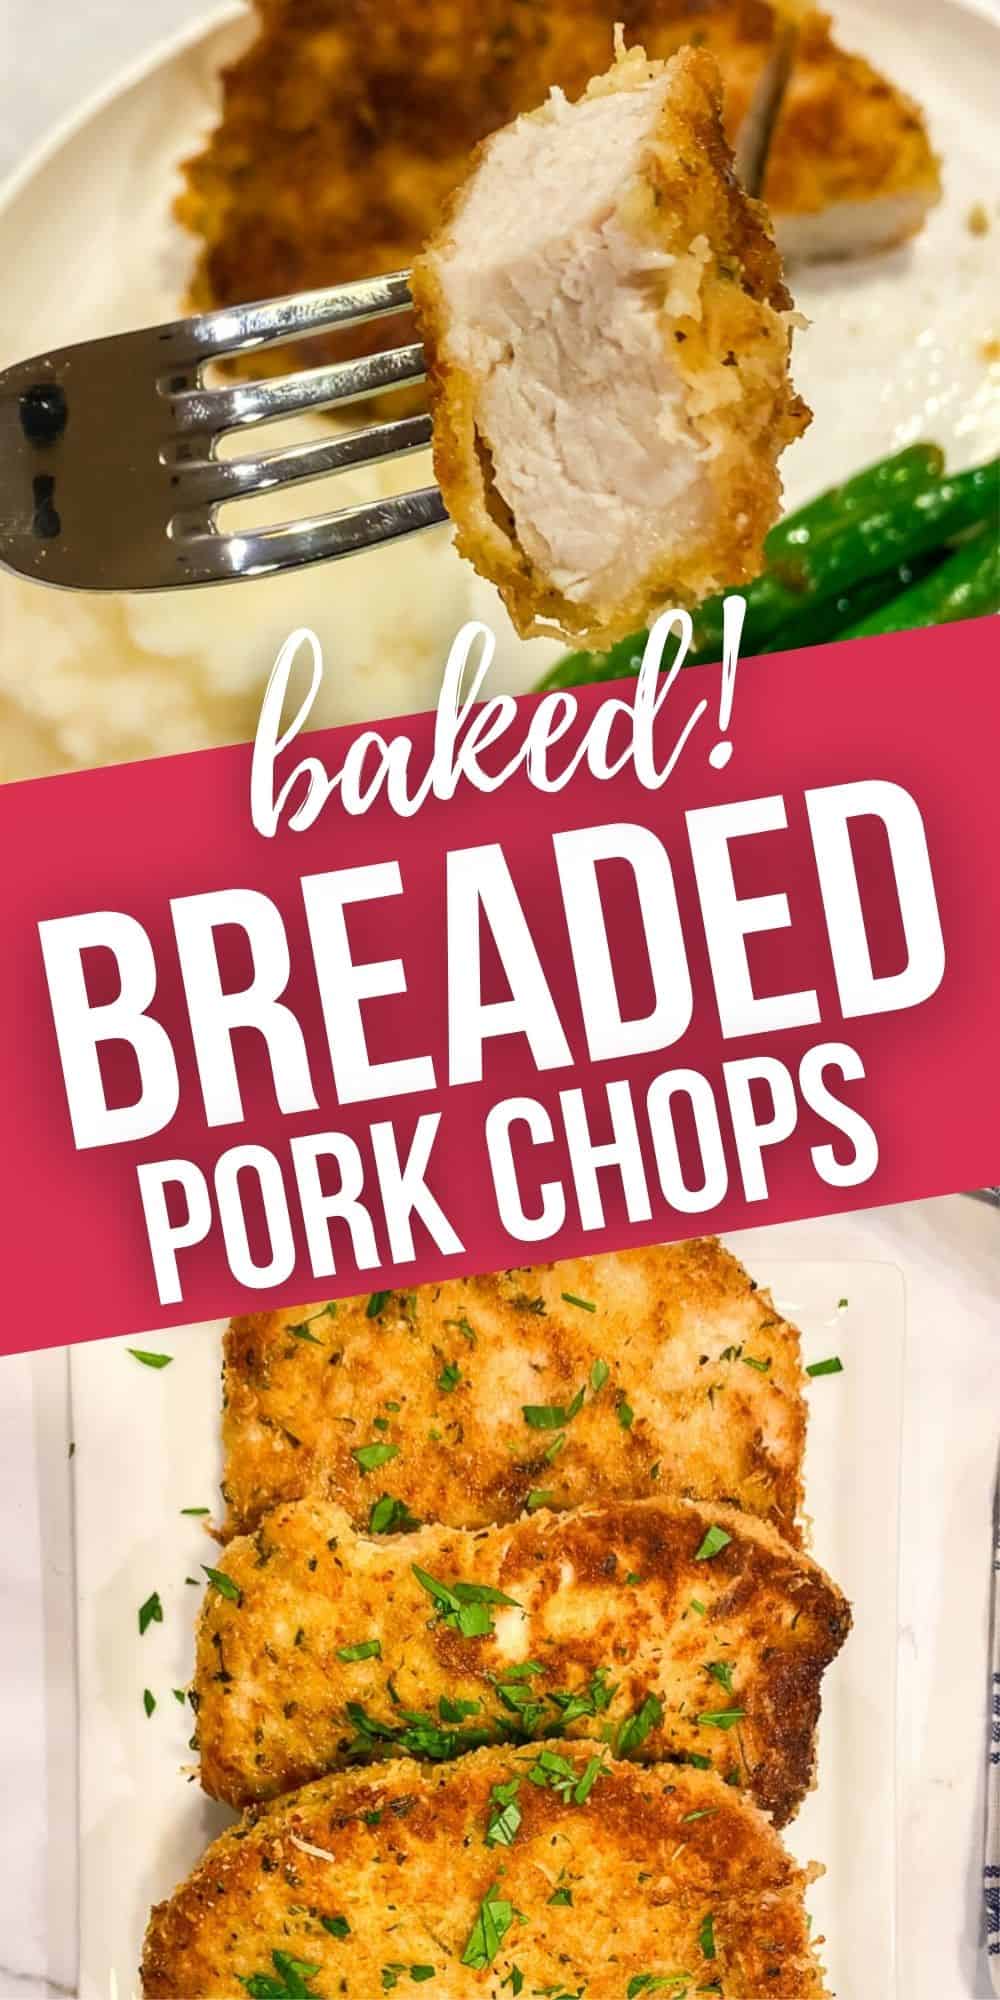 Breaded Baked Pork Chops | It is a Keeper